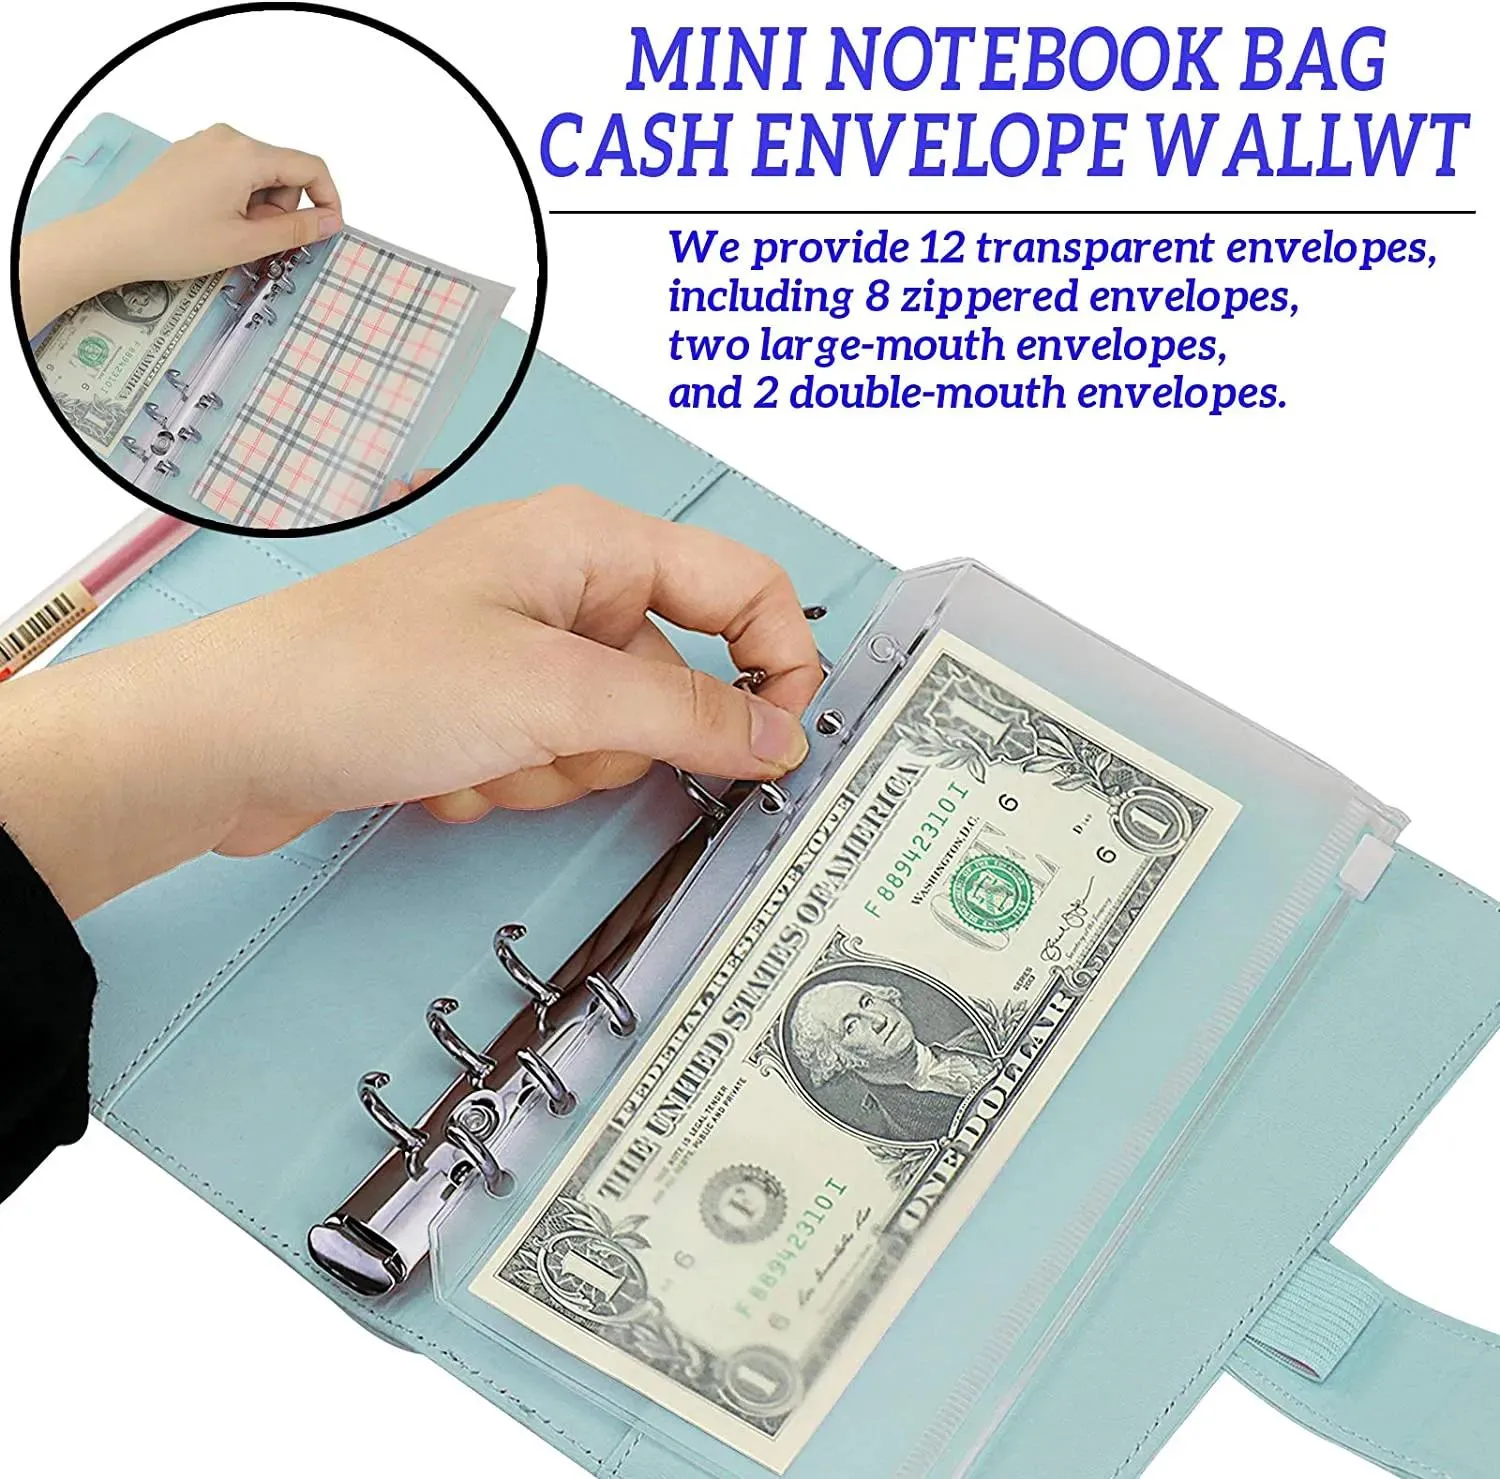 A6 PU Leather Binder Budget Planner Cash Envelope Wallet System with Budget Envelopes Binder Pockets for Budgeting